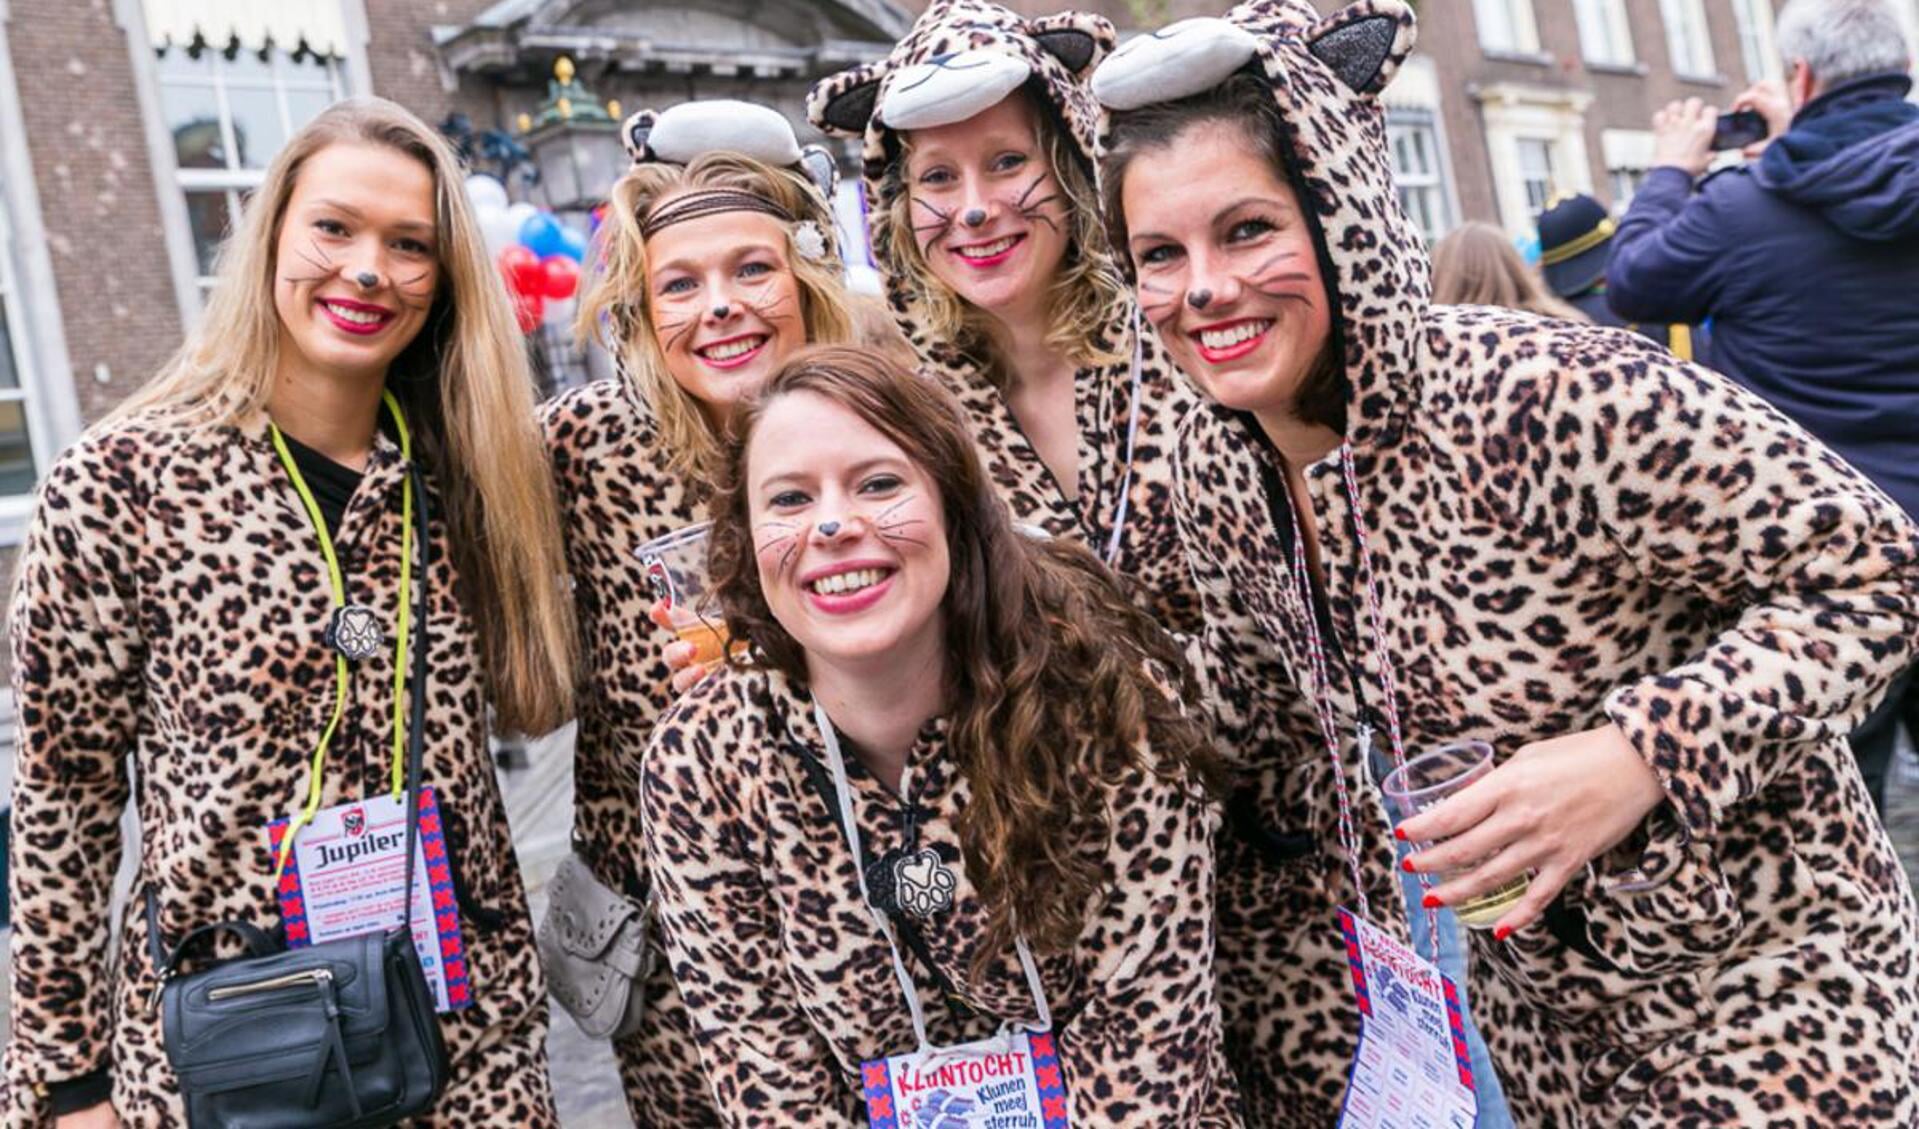 uitdrukken snap Voorwoord Stoere en strakke pakjes populair bij vrouwen met carnaval' | BredaVandaag  - Hét nieuws uit Breda